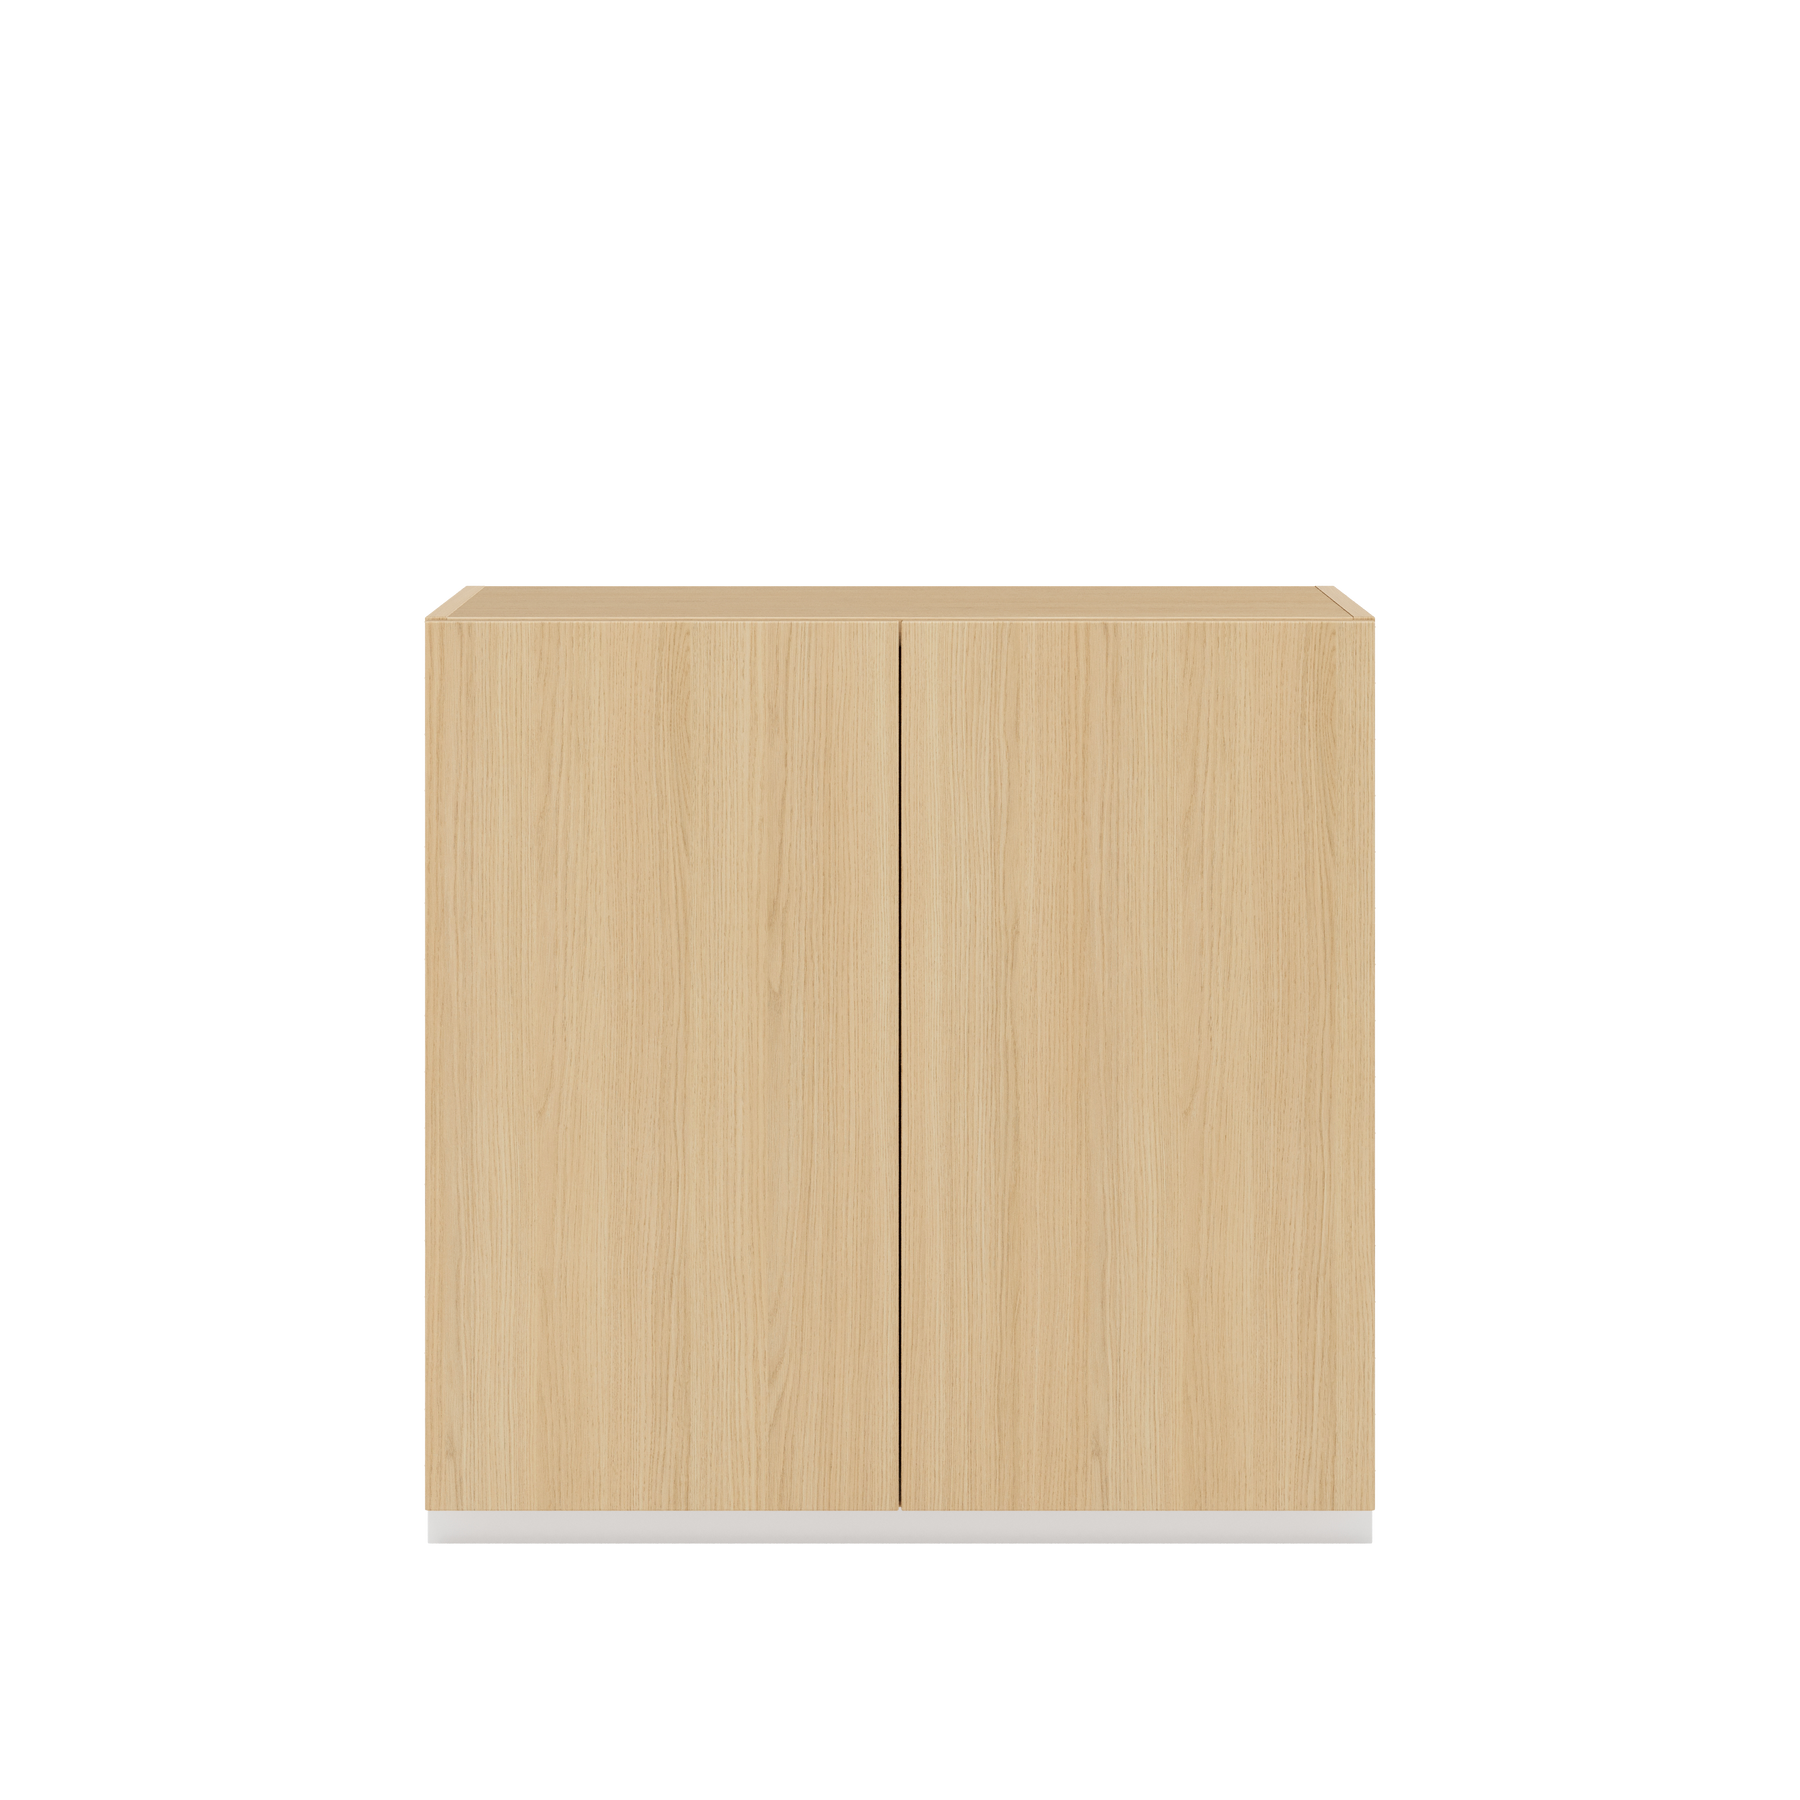 Vor weißem Hintergrund sieht man ein Sideboard aus Eichenholz. Die beiden Drehtüren haben keine Griffe und sind mit einem Push-to-open-Mechanismus ausgestattet.